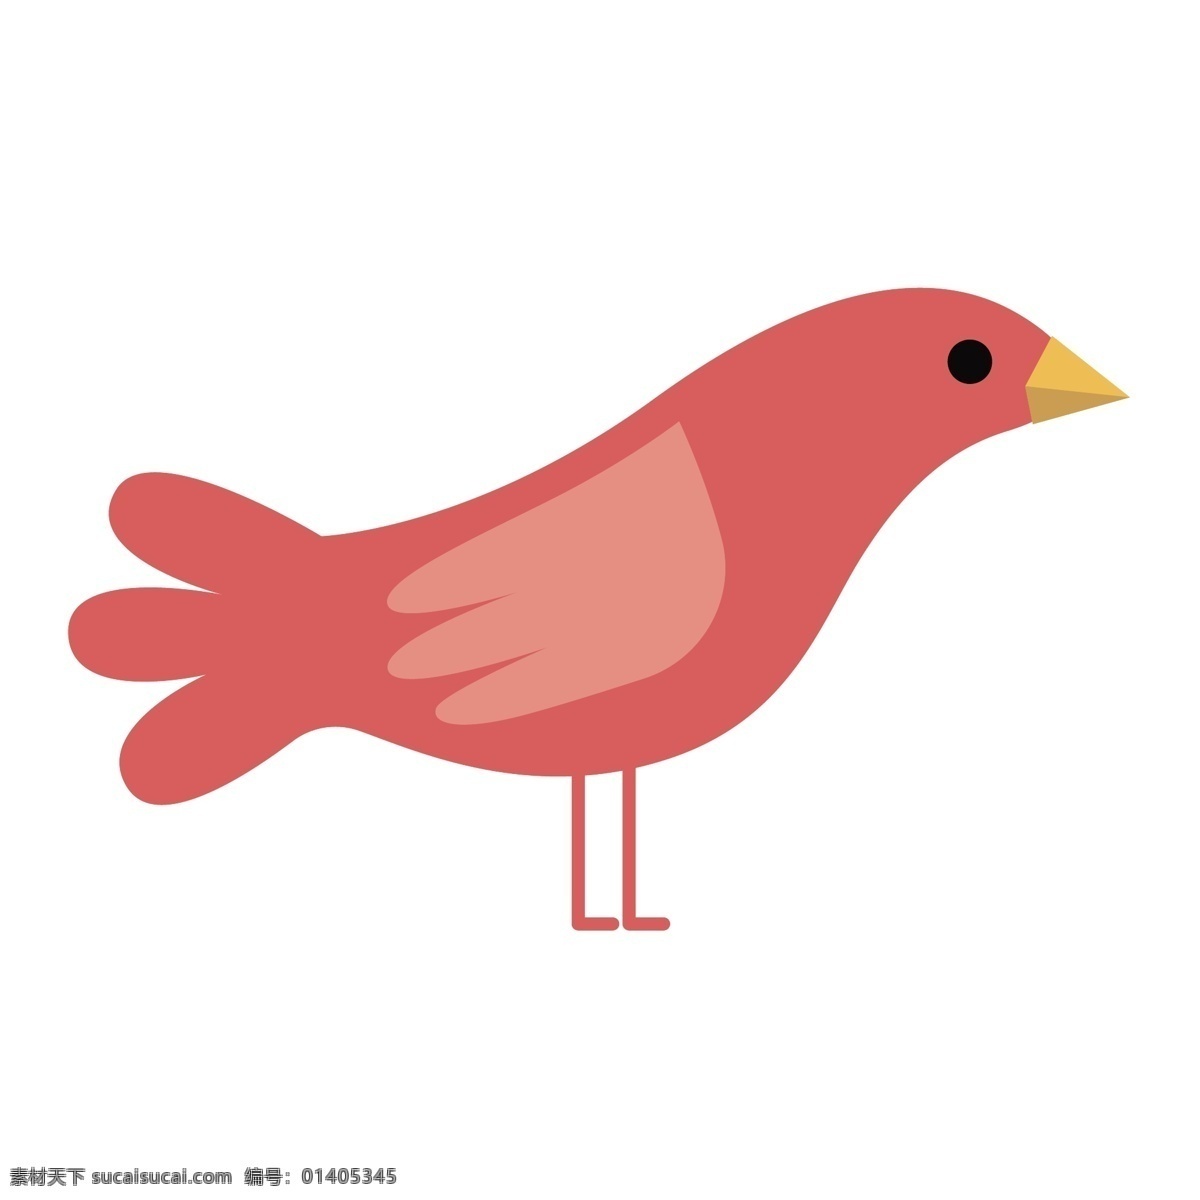 粉红色 简约 小鸟 插画 卡通 彩色 小清新 创意 矢量 商务 科技 办公 元素 现代 装饰 图案